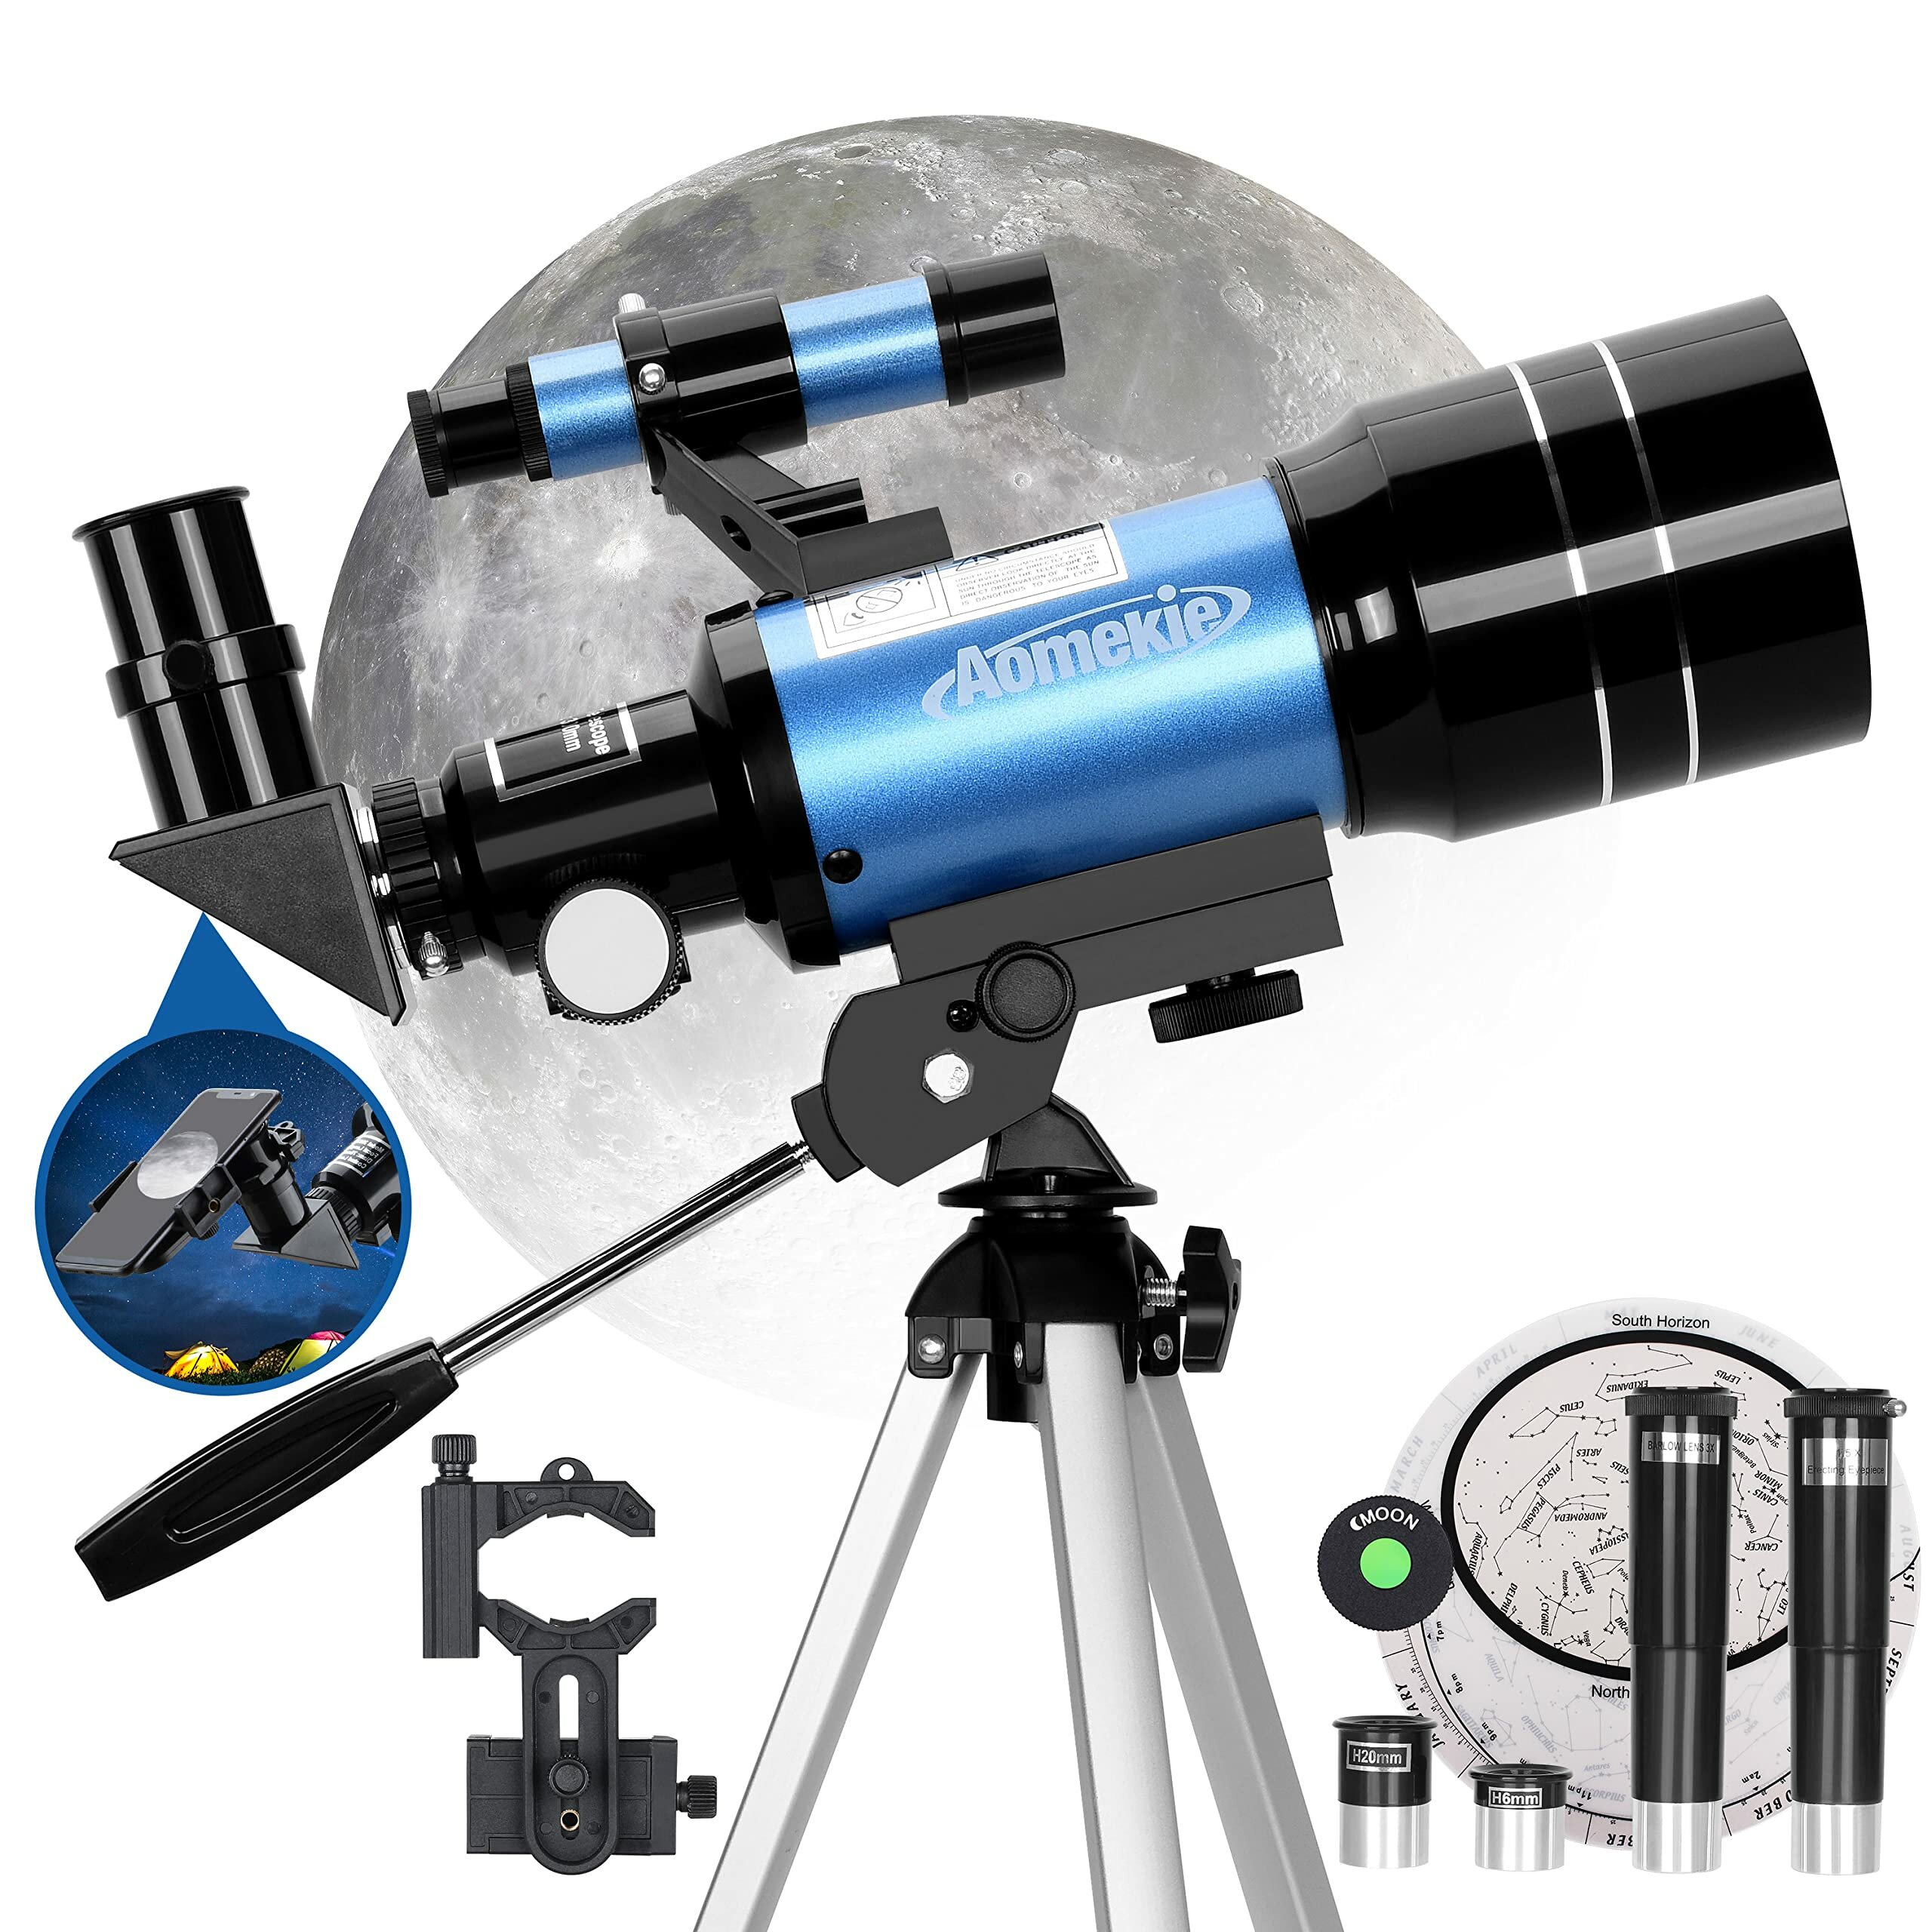 [ΕΕ Απευθείας] Αστρονομικό τηλεσκόπιο AOMEKIE AO2001 70mm για παιδιά 150X Ισχυρό αστρονομικό τηλεσκόπιο με προσαρμογέα smartphone,τρίποδο Barlow και εντοπιστή για αρχάριους και εραστές